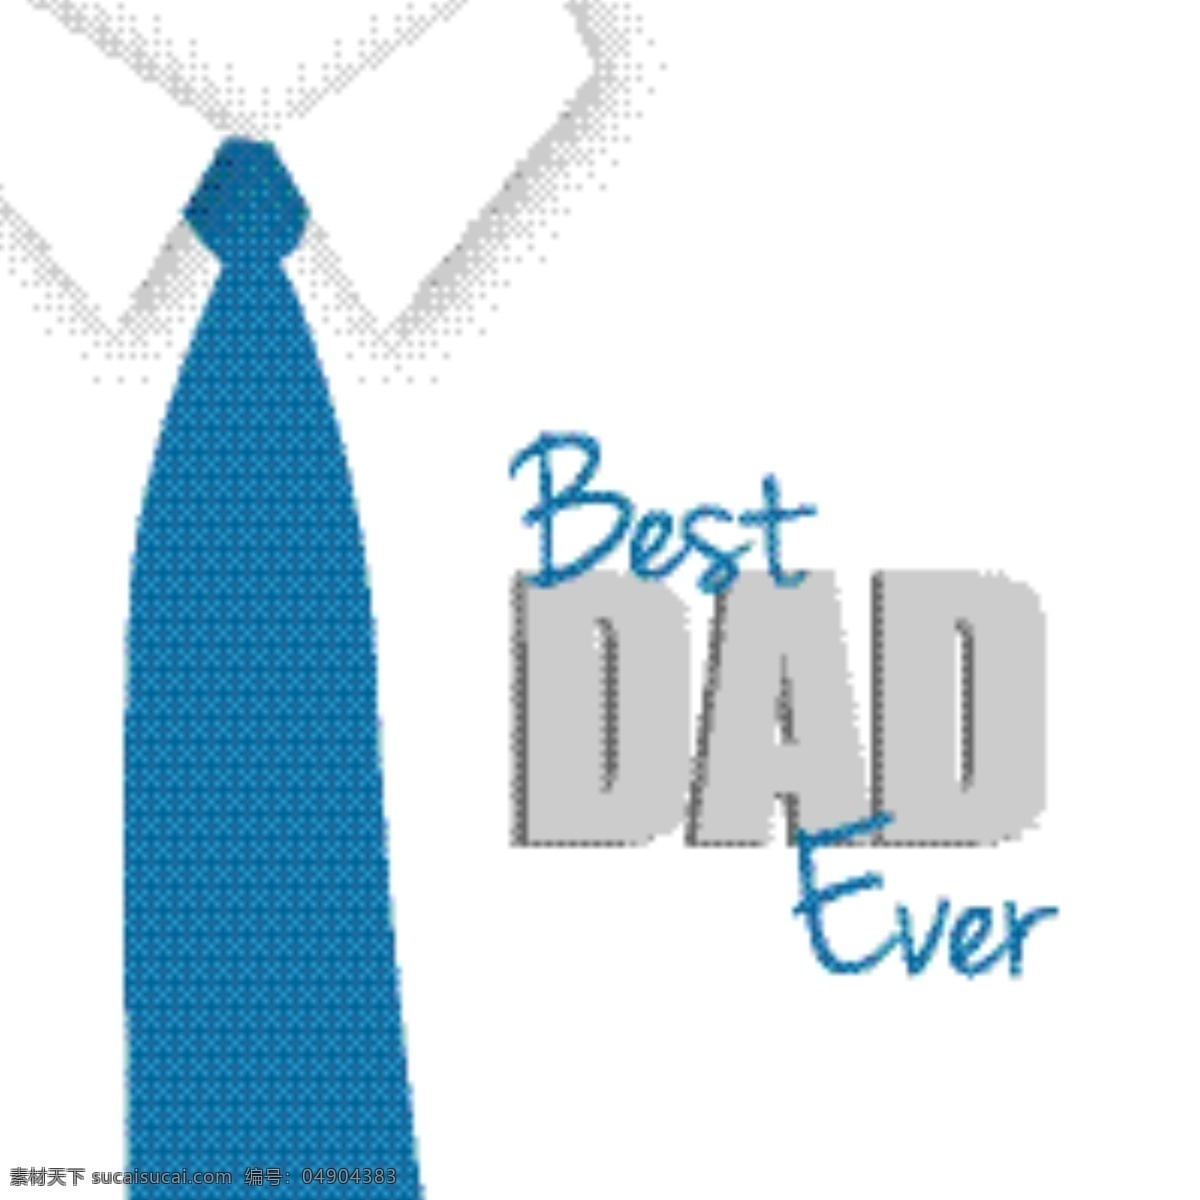 白色 衬衫 父亲节 元素 父亲节设计 父亲节素材 父亲节元素